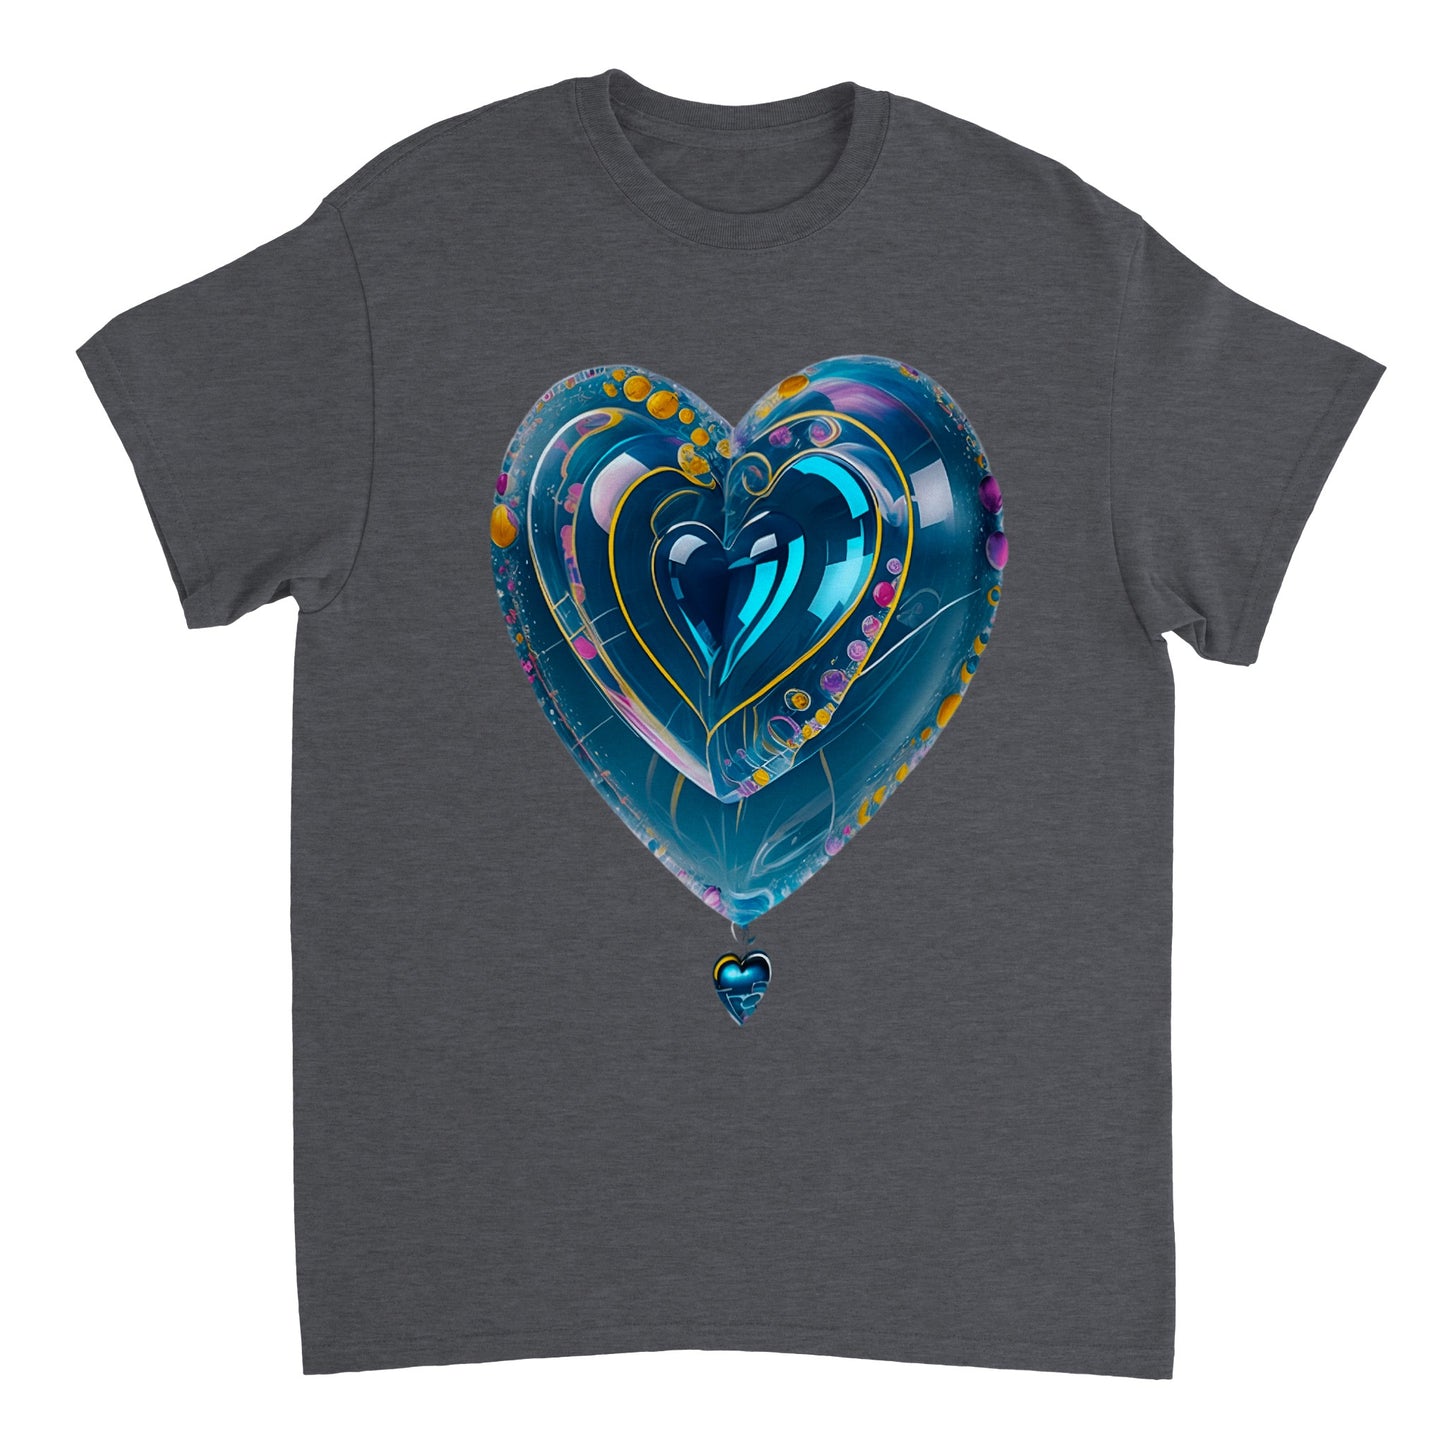 Love Heart - Heavyweight Unisex Crewneck T-shirt 71